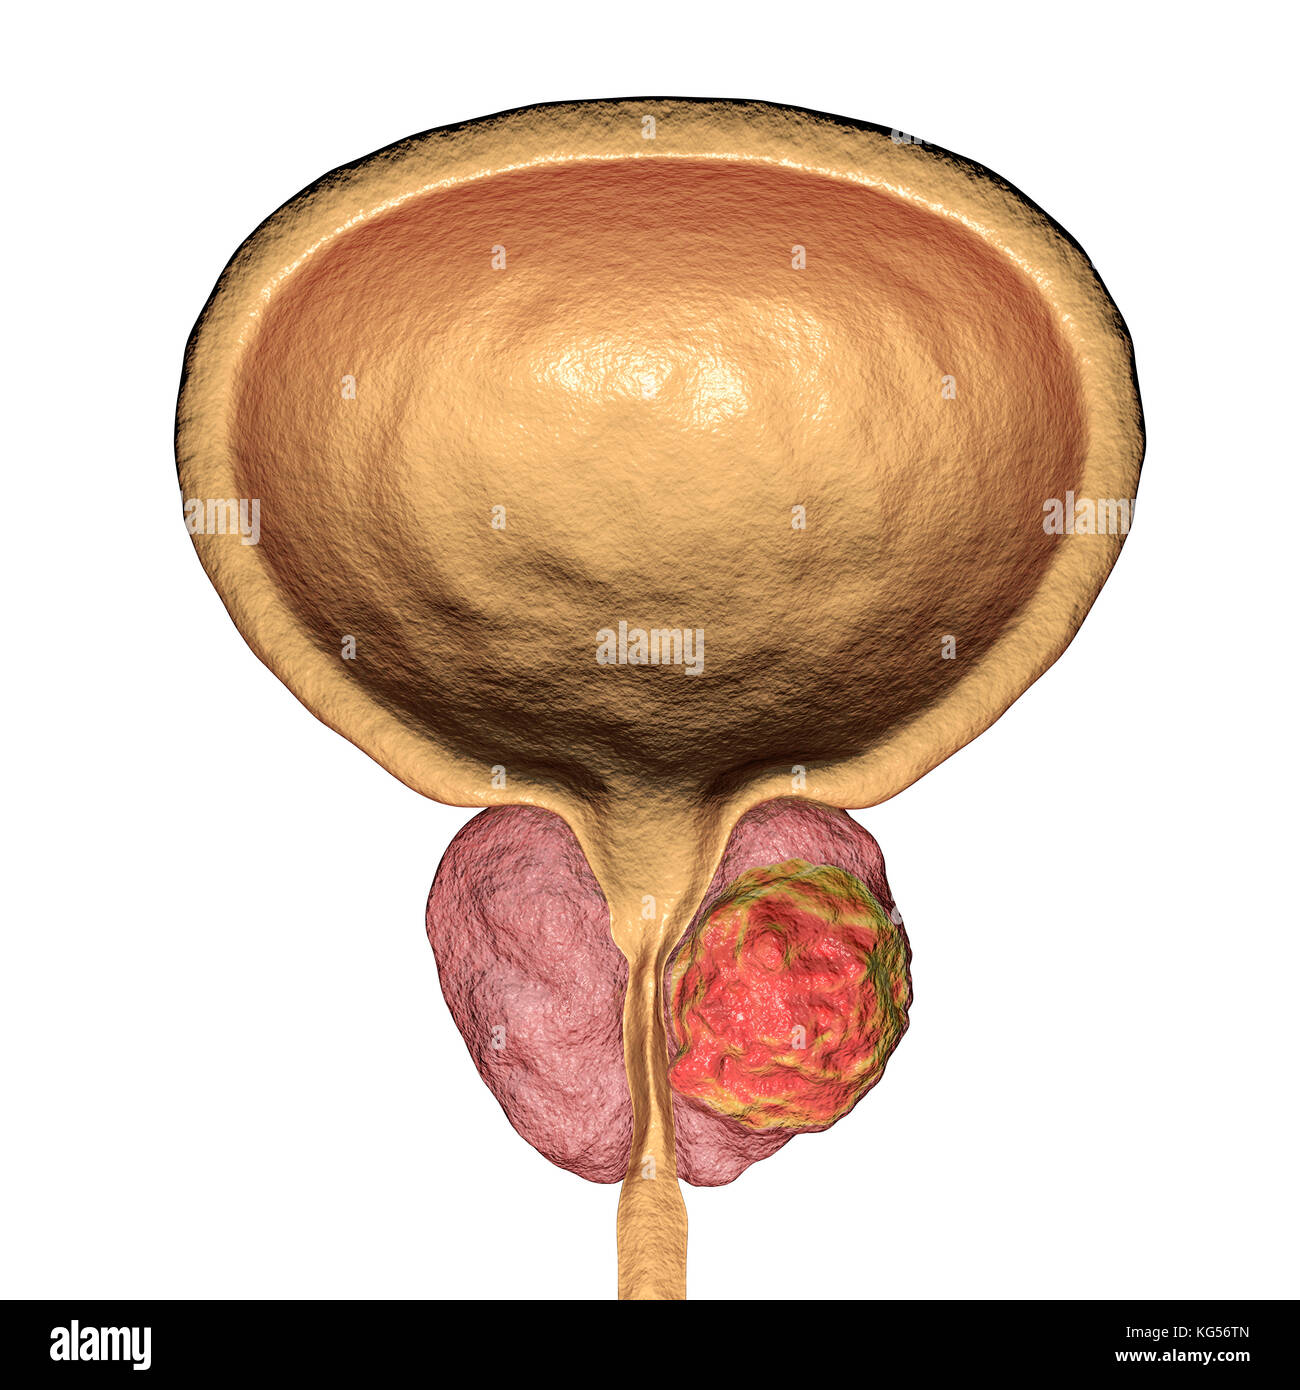 Il cancro della prostata. Computer illustrazione di un tumore canceroso (centro destra) nella ghiandola della prostata (rosa, centro). L'uretra può essere visto correre verso il centro della prostata, dalla vescica (top). Il cancro della prostata è uno dei più comuni cancri maschio, che di norma colpisce le persone anziane. La crescita di un tumore della prostata possono ostruire il collo della vescica, pregiudicando la minzione. Tuttavia è una lenta crescita del cancro. Se diagnosticata, trattamento comporta un intervento chirurgico per rimuovere la ghiandola della prostata o la radioterapia. Foto Stock